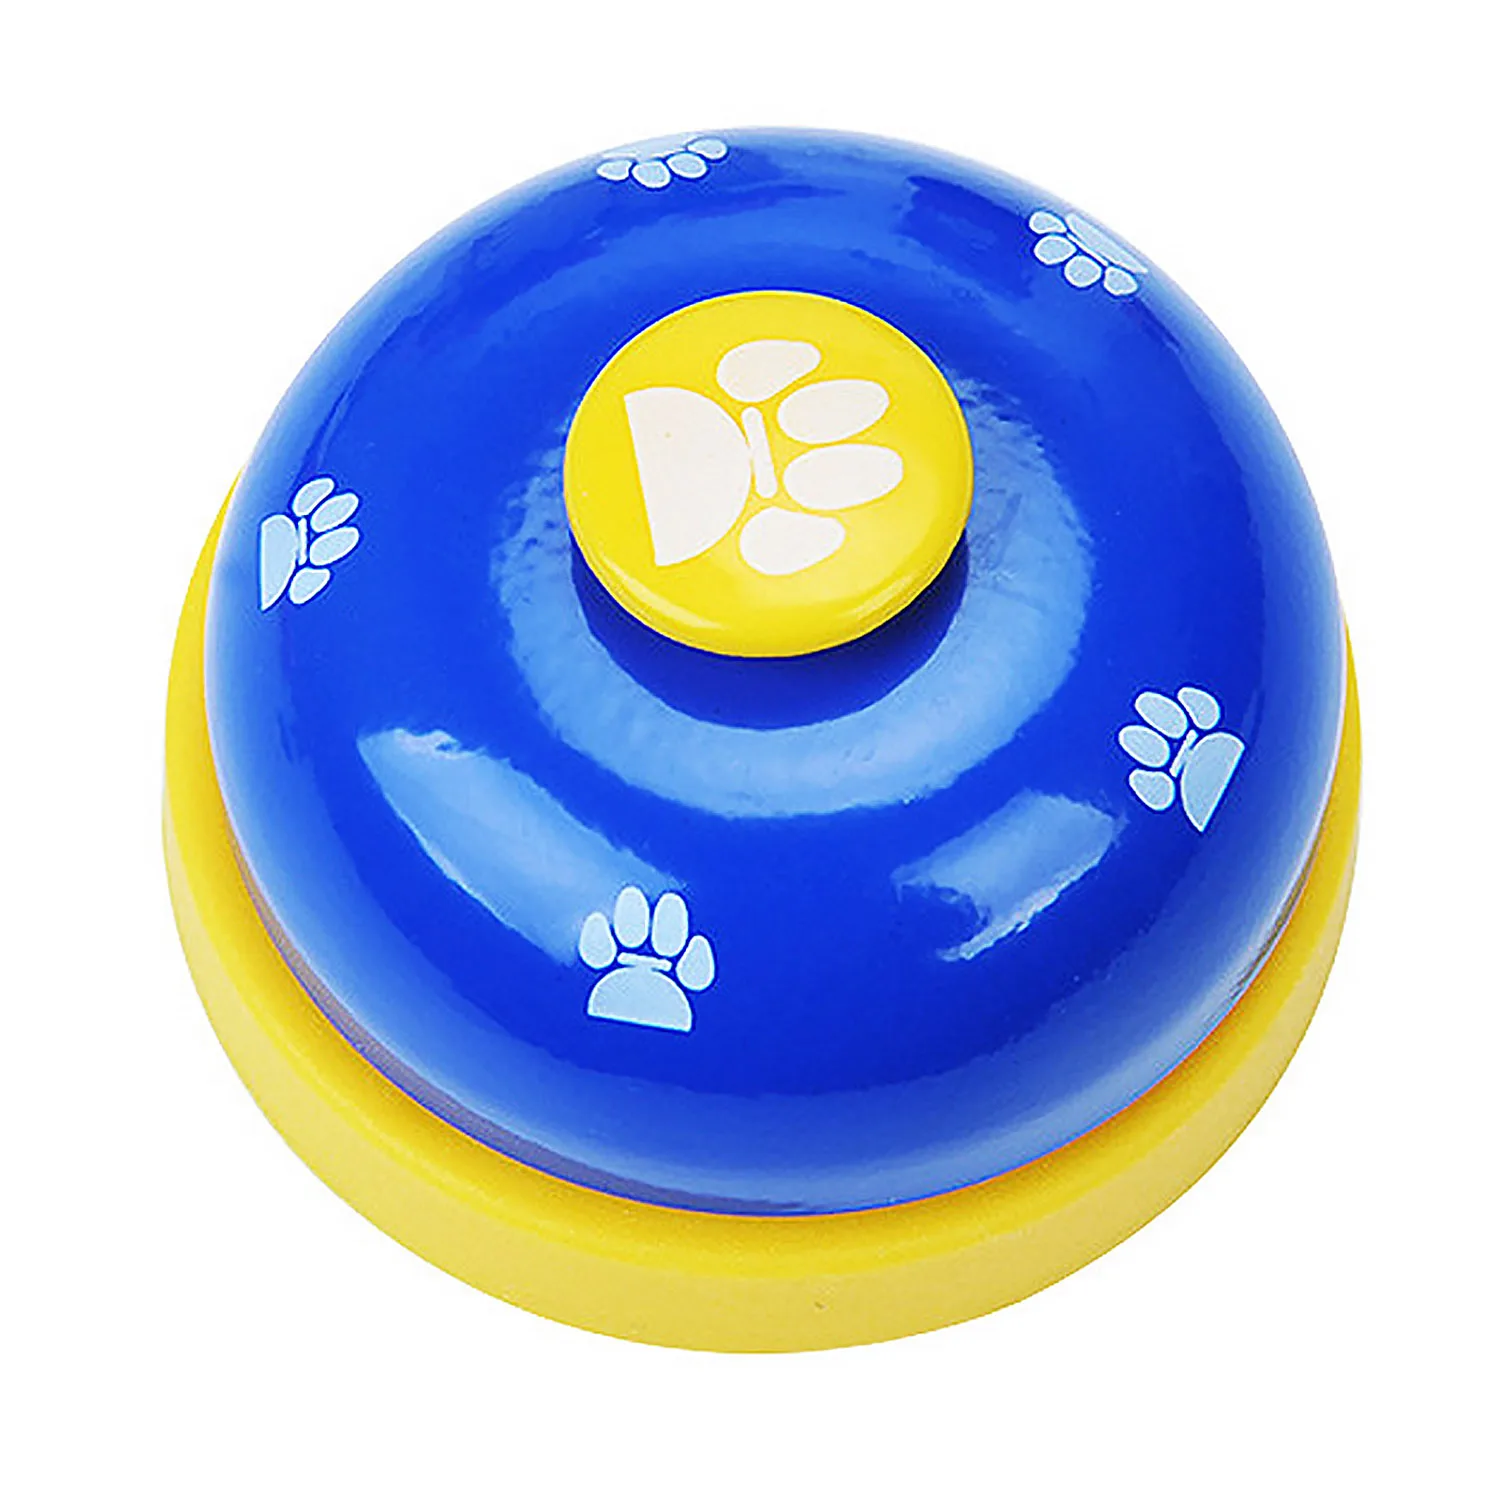 Behogar модная лапа напечатанная собака кистевой эспандер колокольчик интерактивные игрушки для лапок игры для домашнего обучения дома разбивание случайный цвет